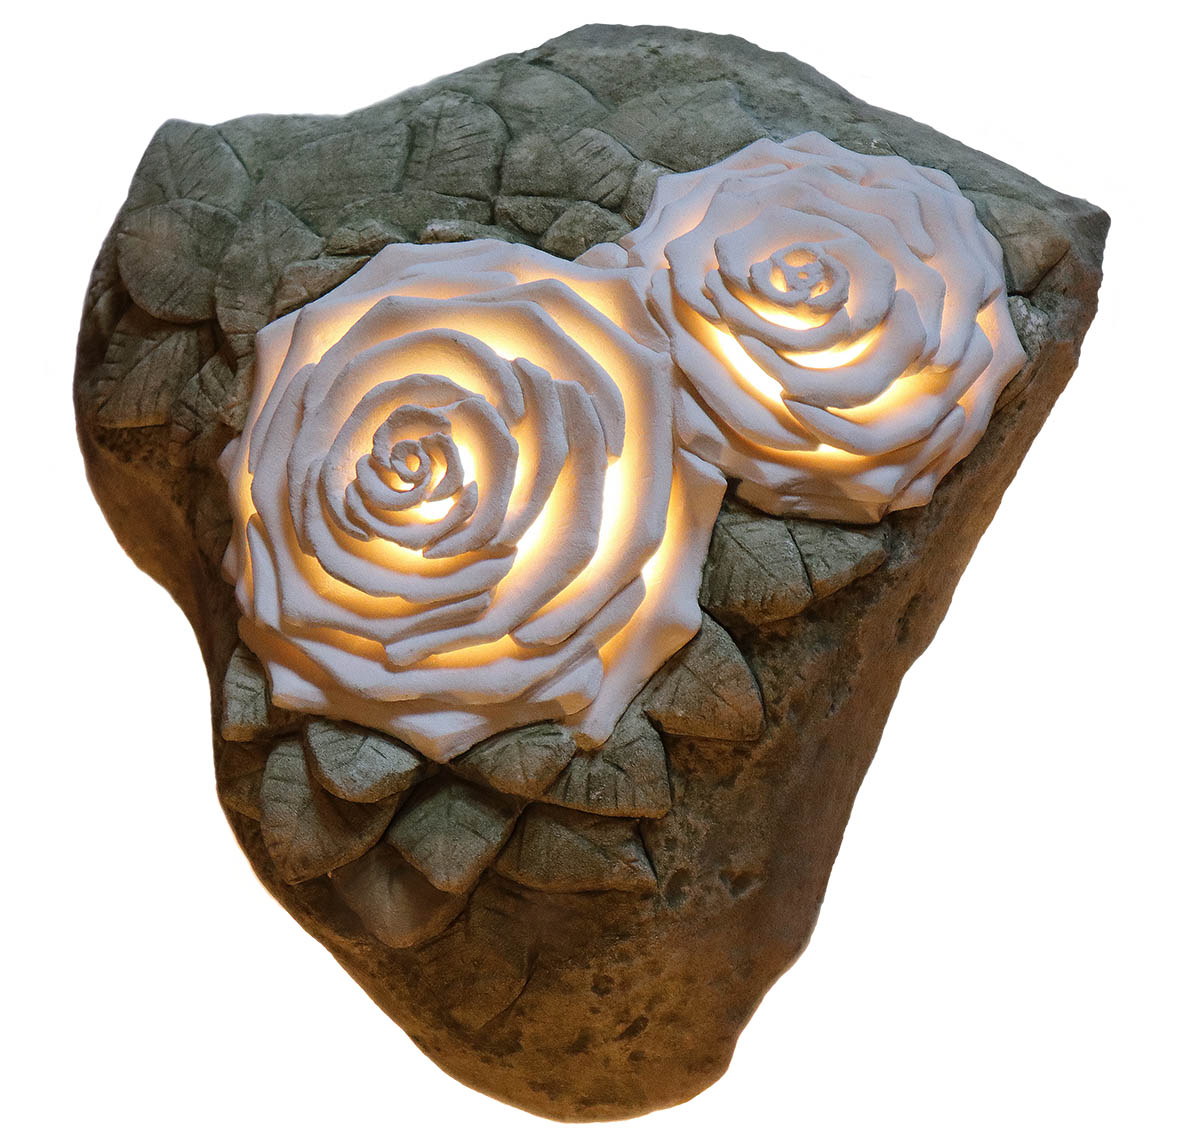 lampe rose 2 weiser kalkstein meeresfund italien neu auf antik